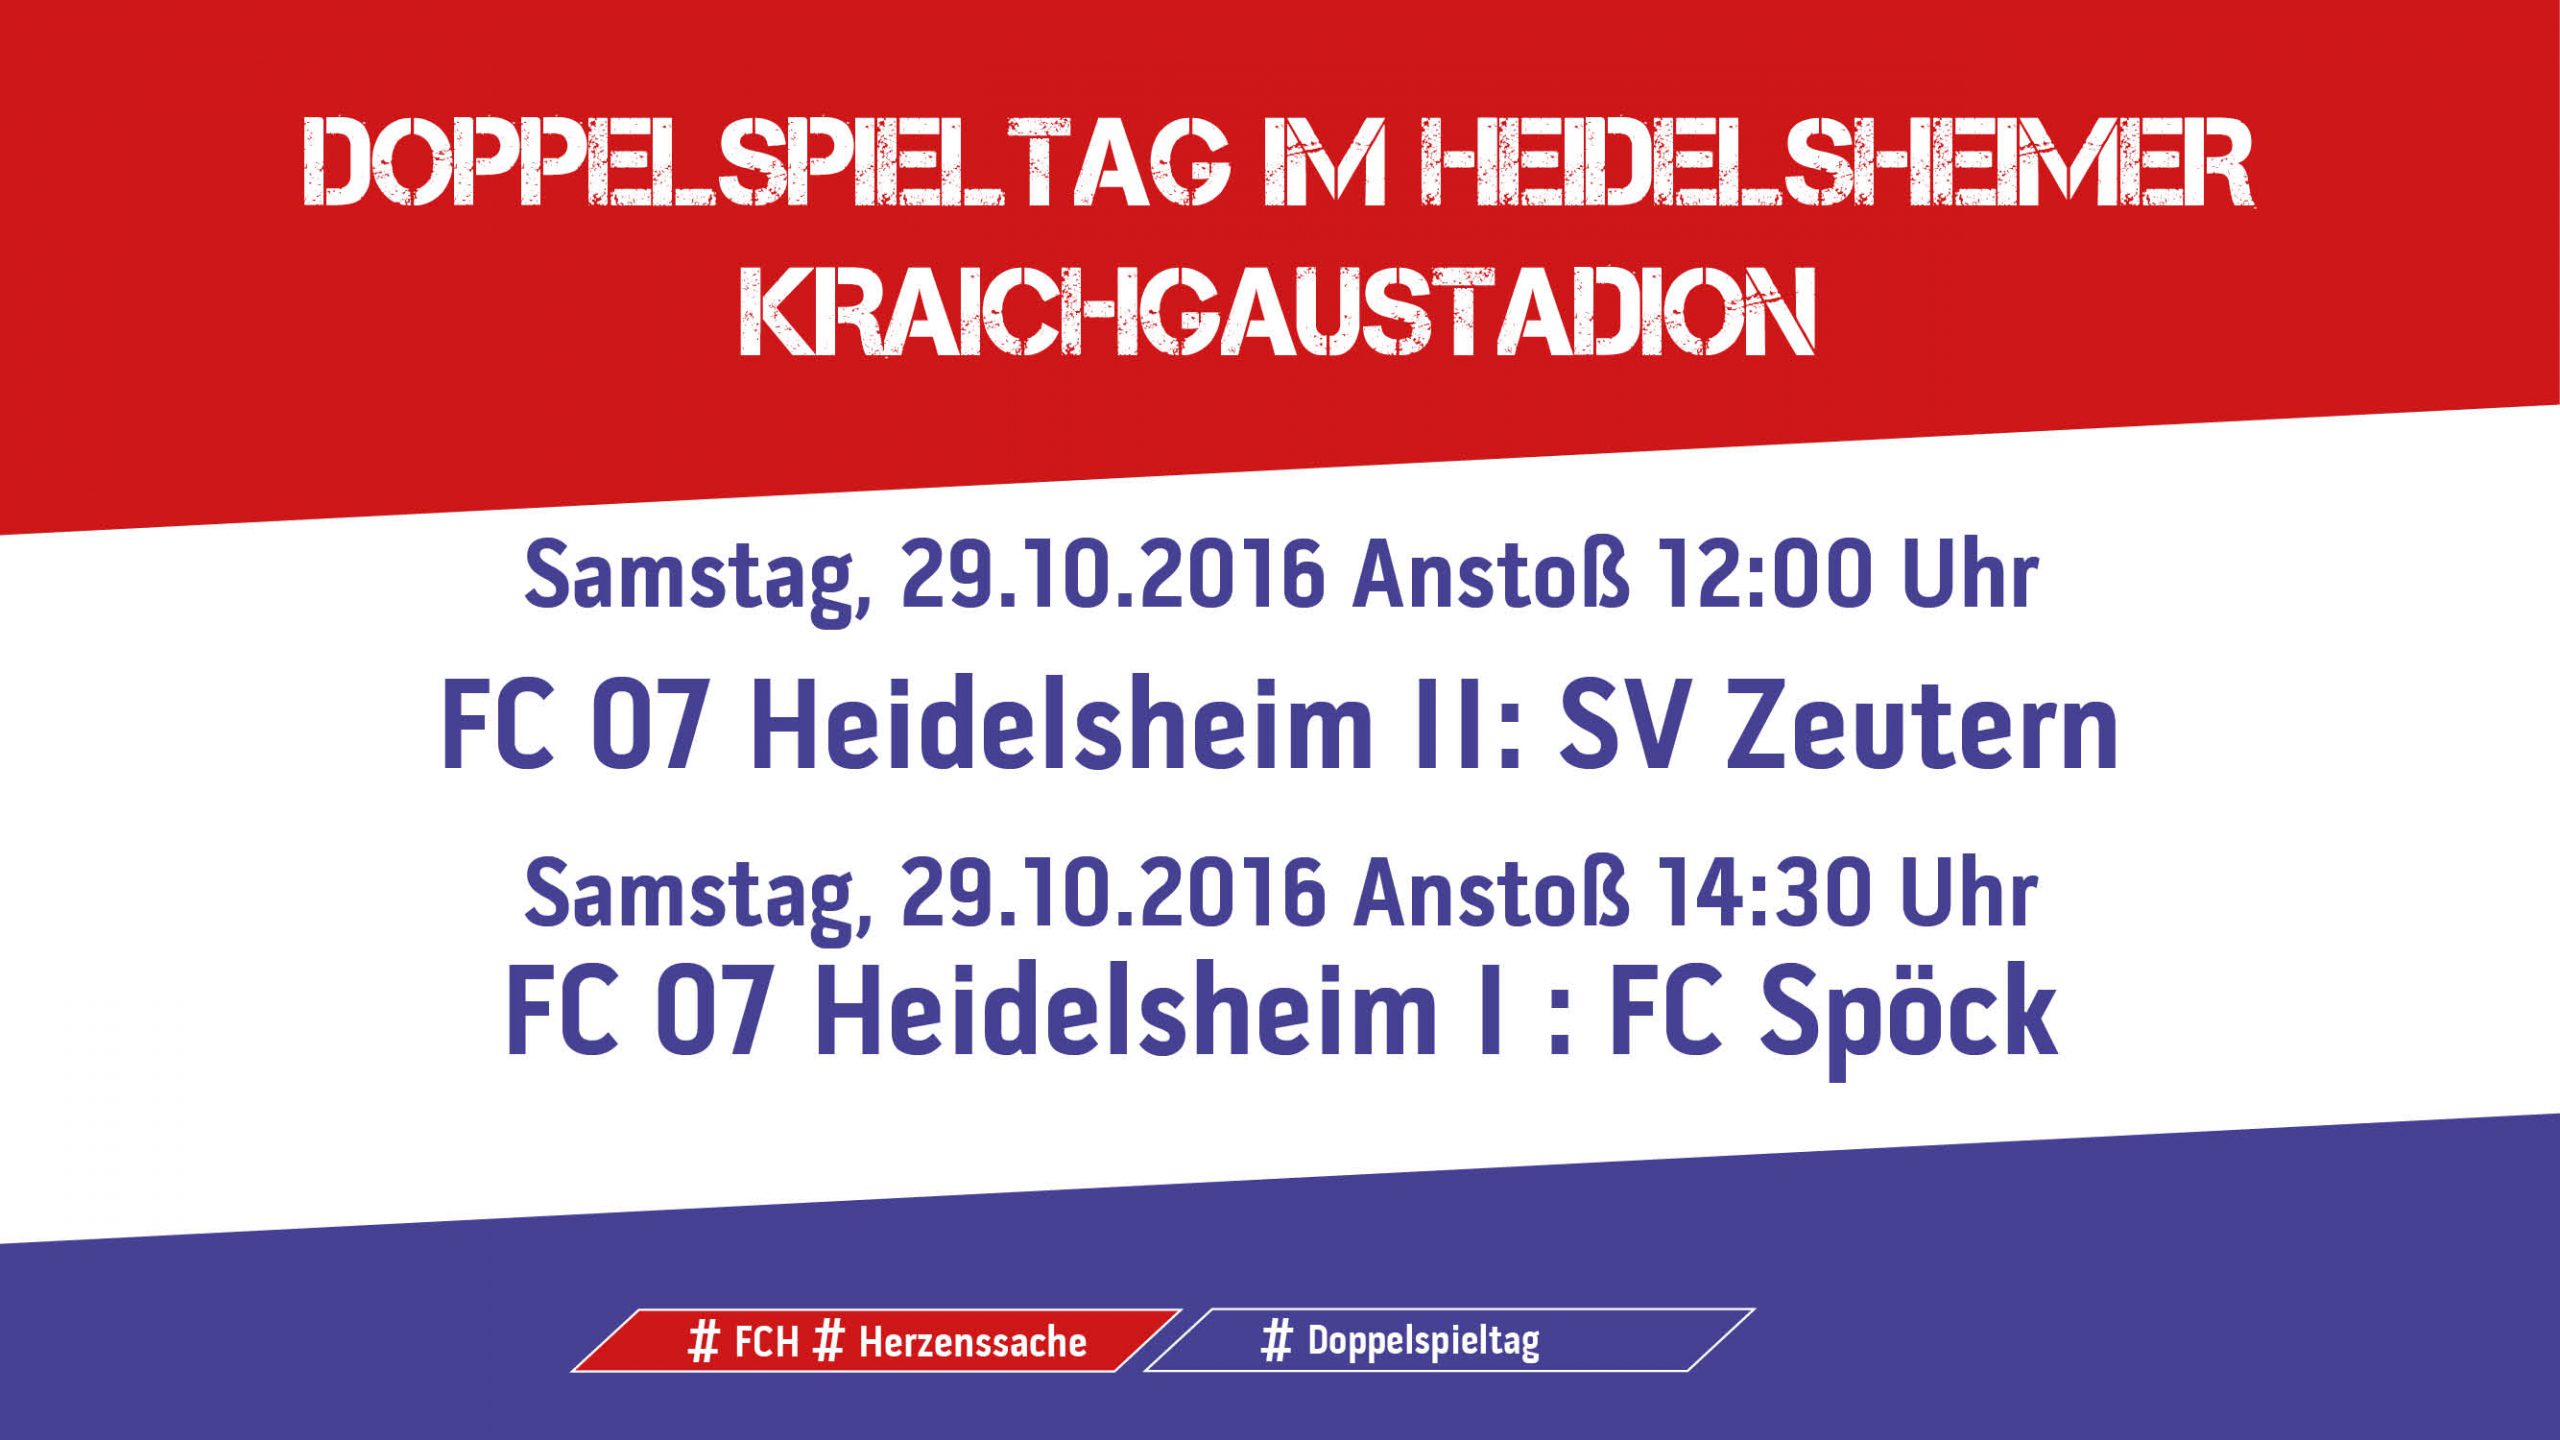 You are currently viewing Nächster Doppelspieltag im Heidelsheimer Kraichgaustadion